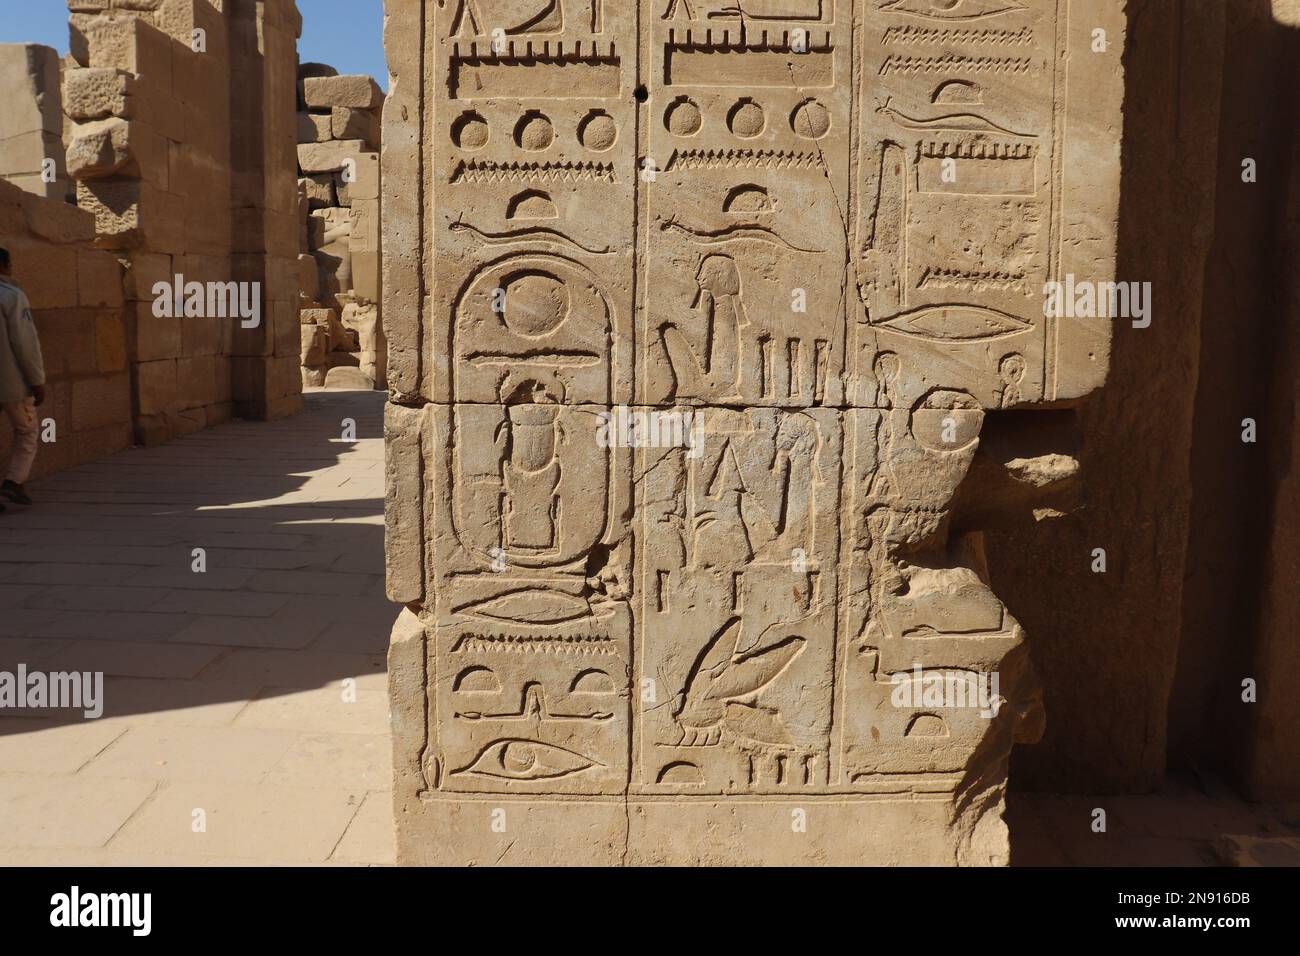 Alte ägyptische Hieroglyphen, die in die Wände des Karnak-Tempels in Luxor, Ägypten, gemeißelt wurden Stockfoto